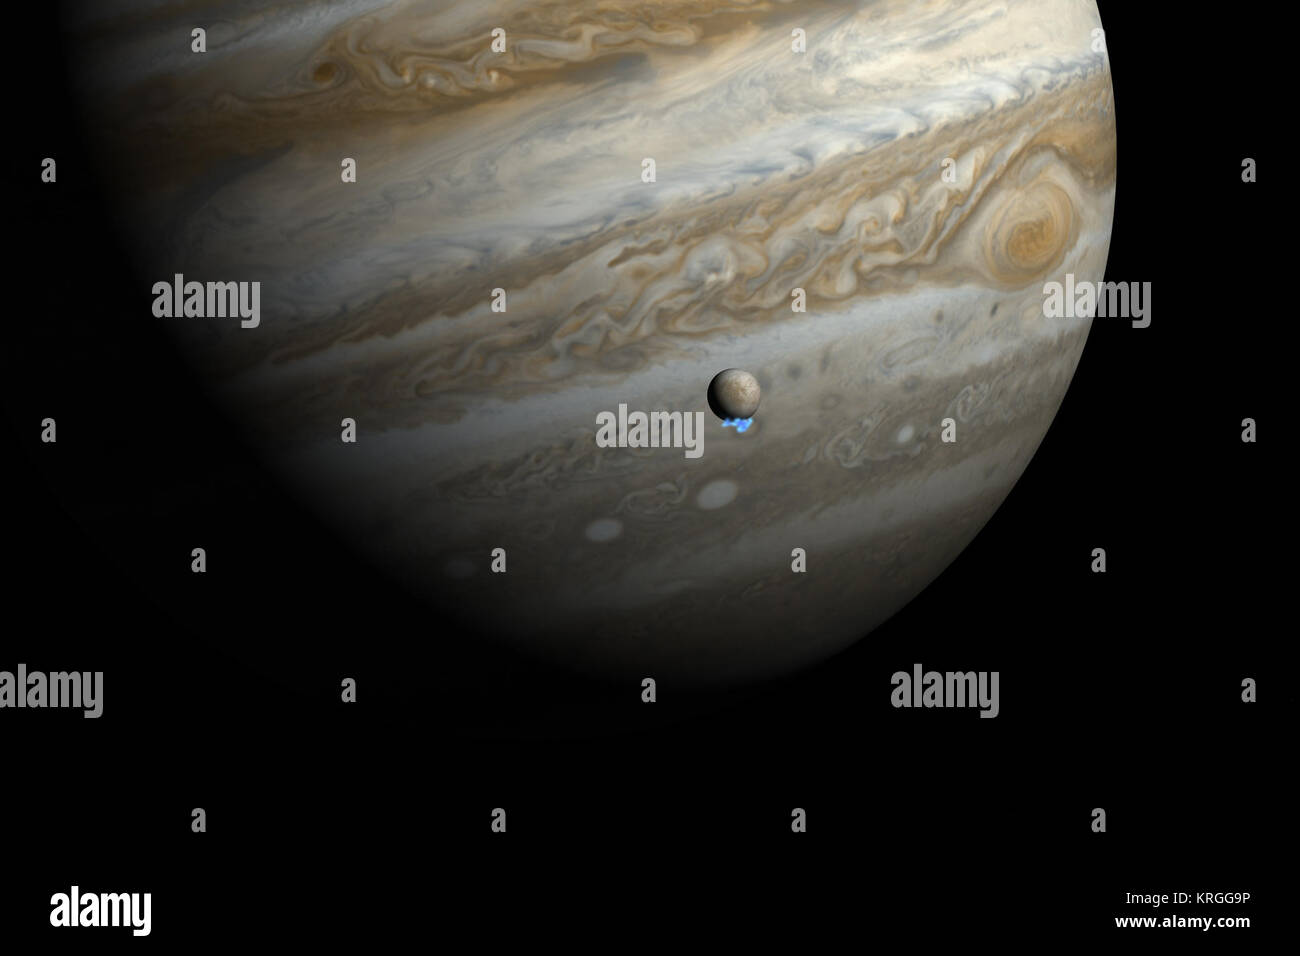 Die künstlerische Darstellung zeigt Jupiter und seinem Mond Europa mit Hilfe des tatsächlichen Jupiter und Europa Bilder im sichtbaren Licht. Das Hubble uv-Bilder zeigen das schwache Emission von Wasserdampf, der Federn haben überlagert worden, wobei die Größe aber nicht die Helligkeit der Federn. Astronomen mit Hubble entdeckt Spuren von Wasserdampf entweicht aus dieser Mond, variablem Plumes in der Nähe von seinem Südpol - Die ersten Beobachtungsdaten von Wasserdampf aus der Oberfläche des Mondes ausgeworfen wird. Wasserdampf Federn auf dem Jupitermond Europa (künstlerische Darstellung) Stockfoto